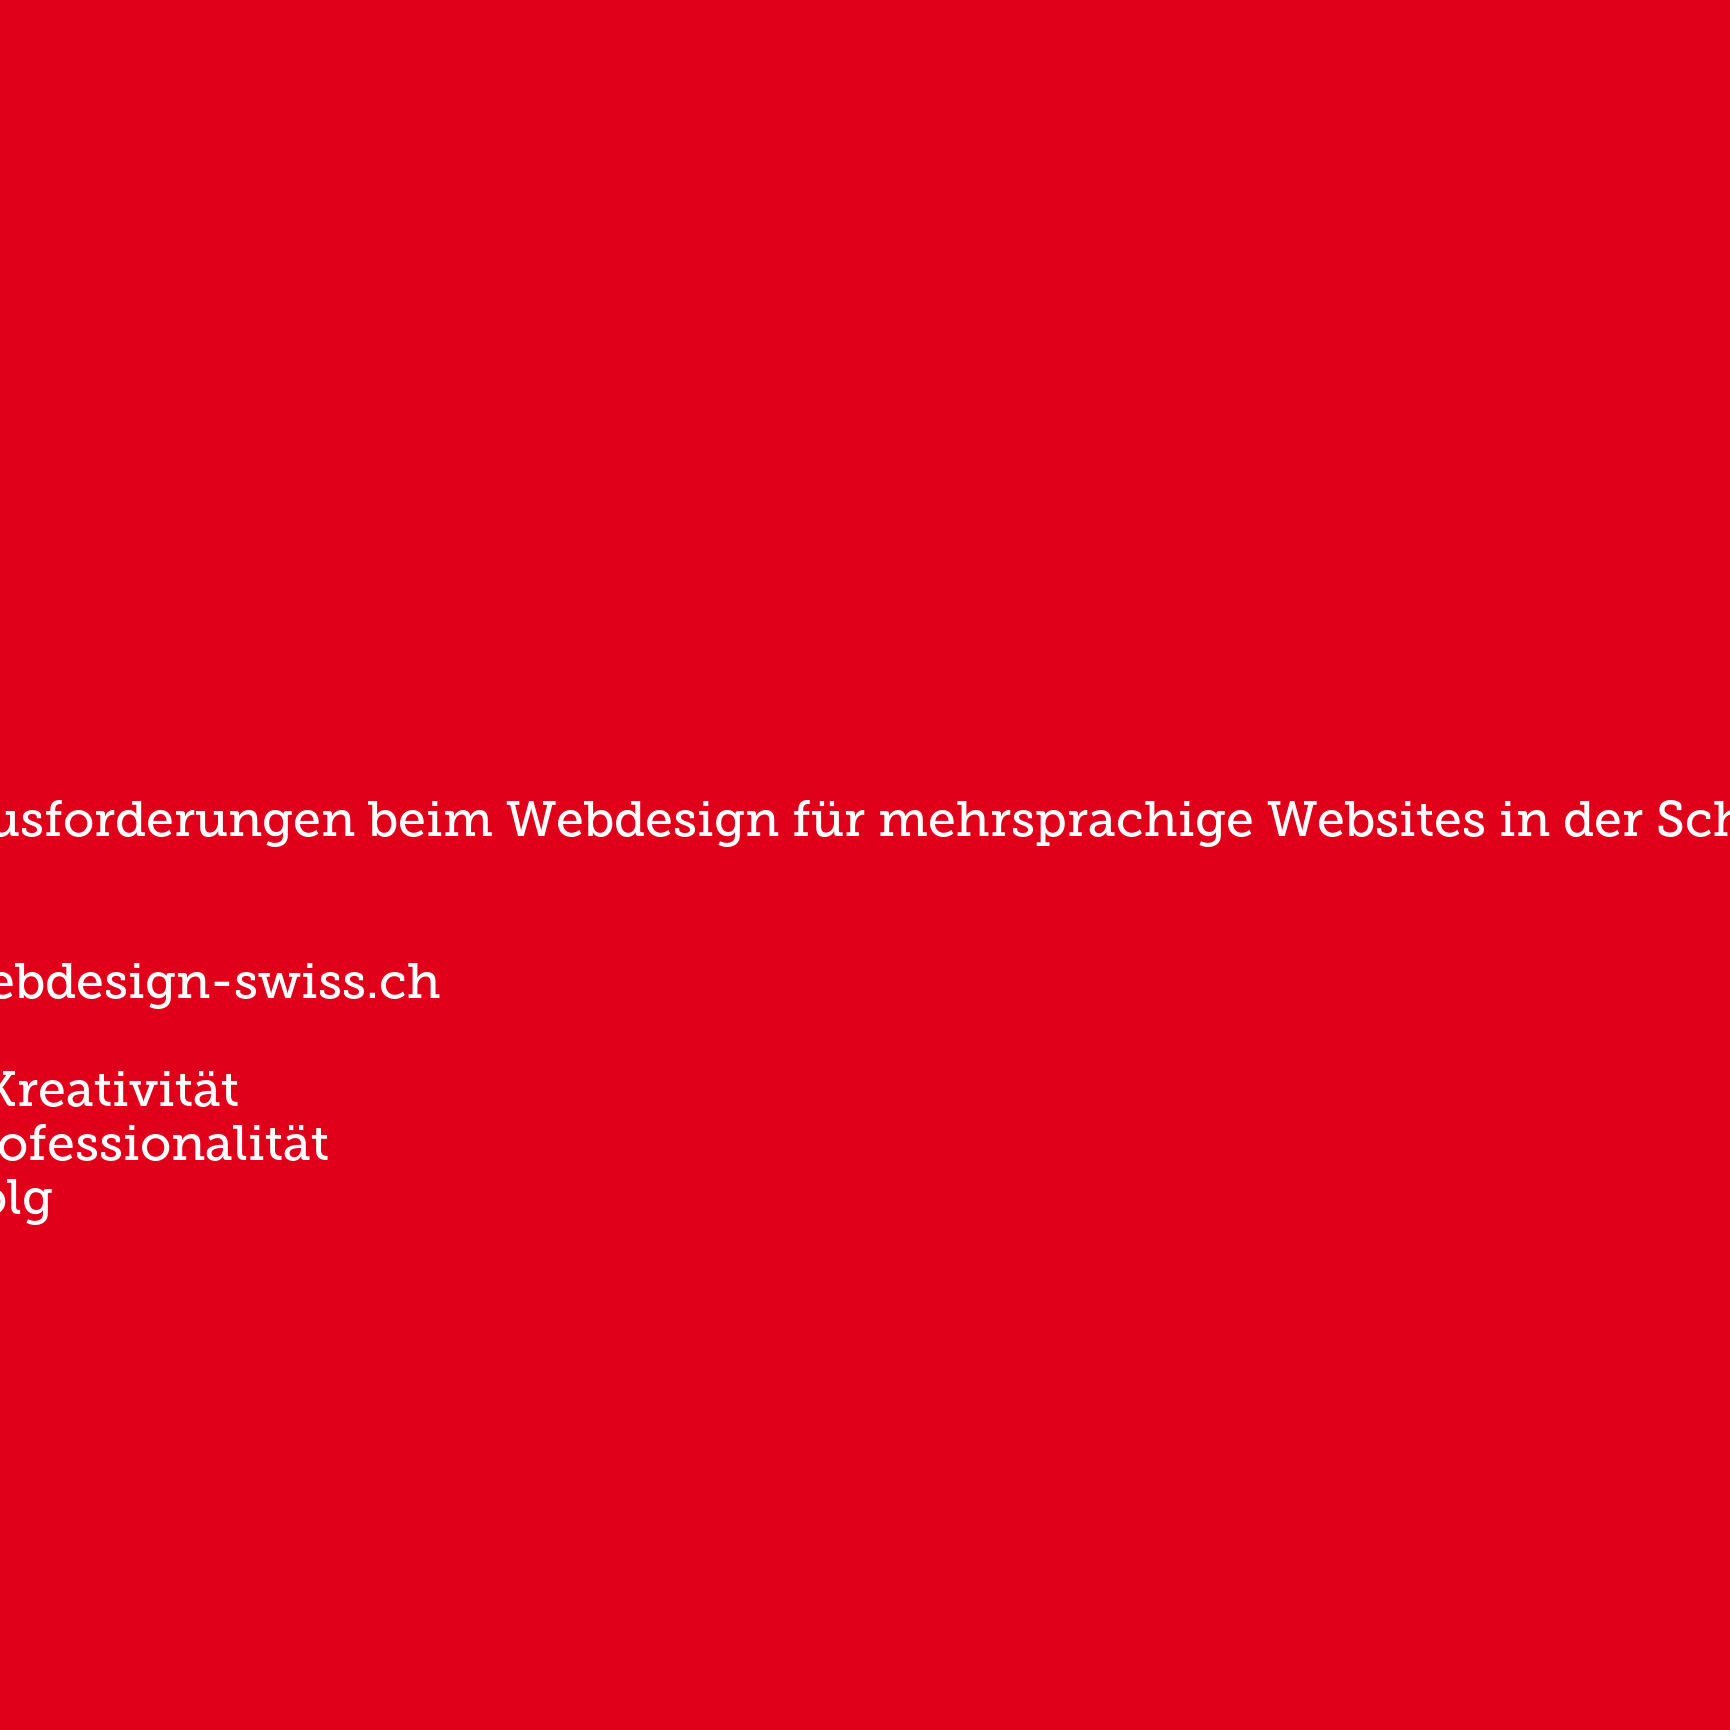 Herausforderungen beim Webdesign für mehrsprachige Websites in der Schweiz